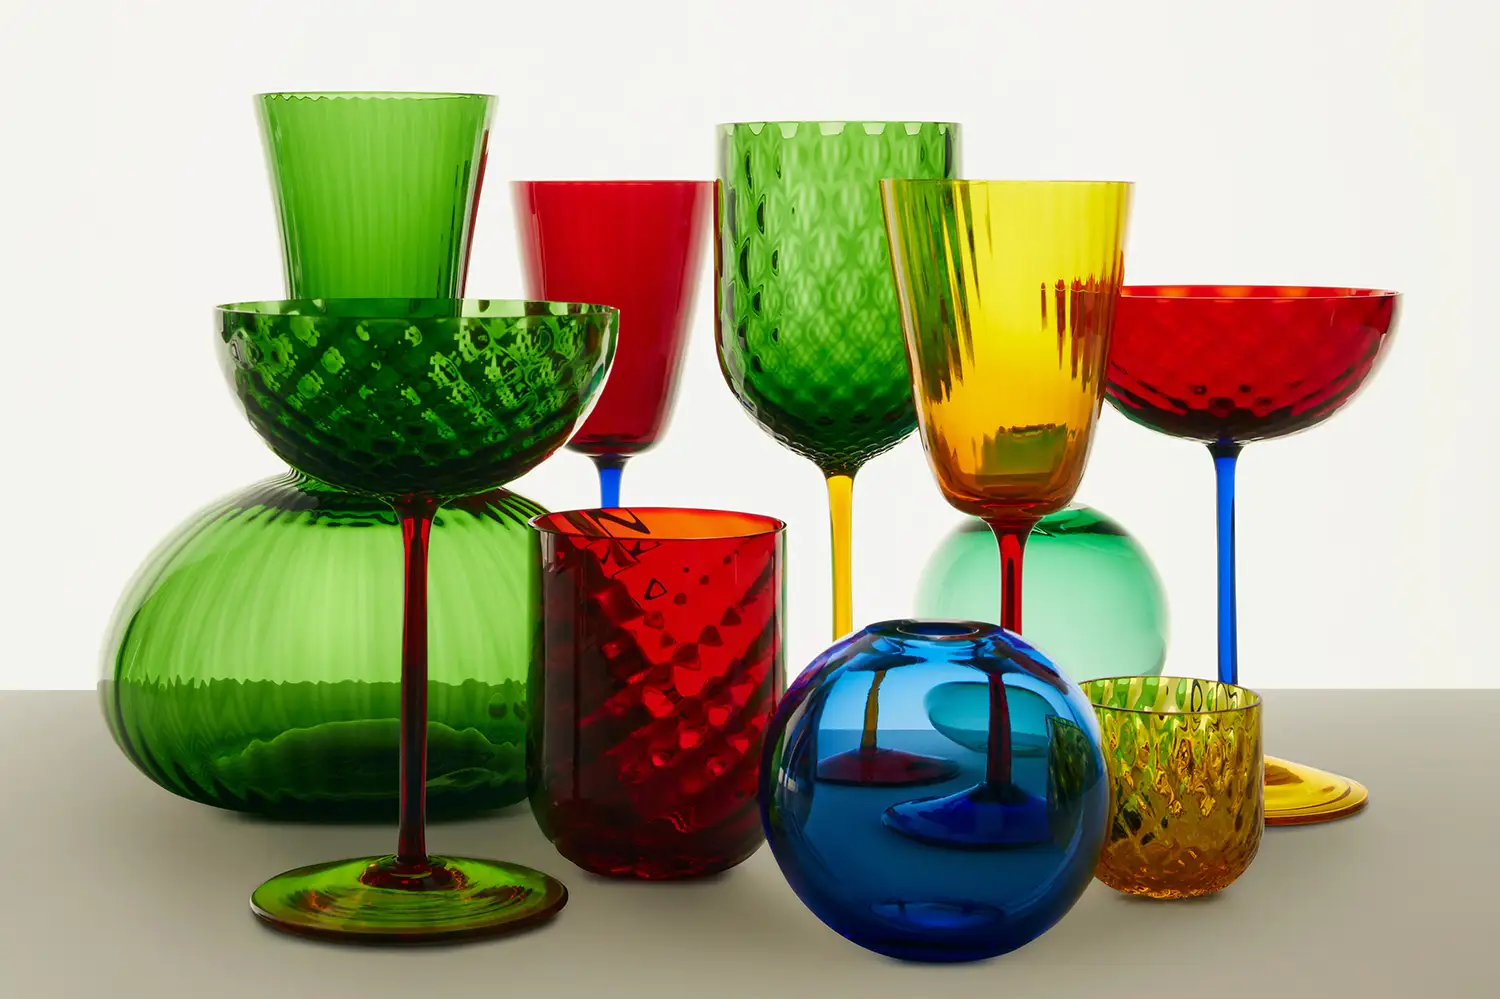 La cristalería está realizada con vidrio de Murano soplado a mano, un tributo a la artesanía italiana.